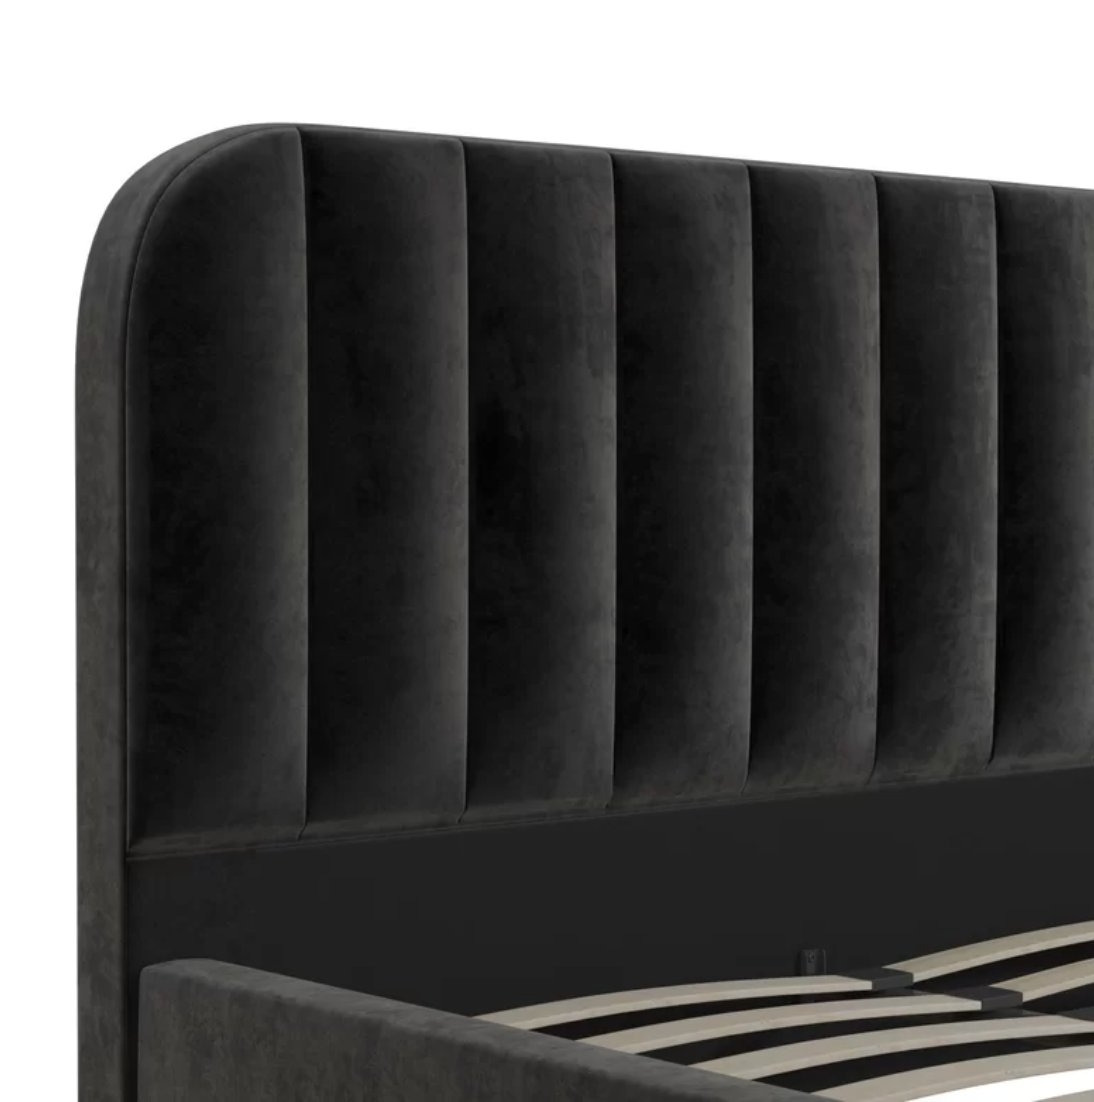 Perrine Upholstered Platform Bed - Image 3